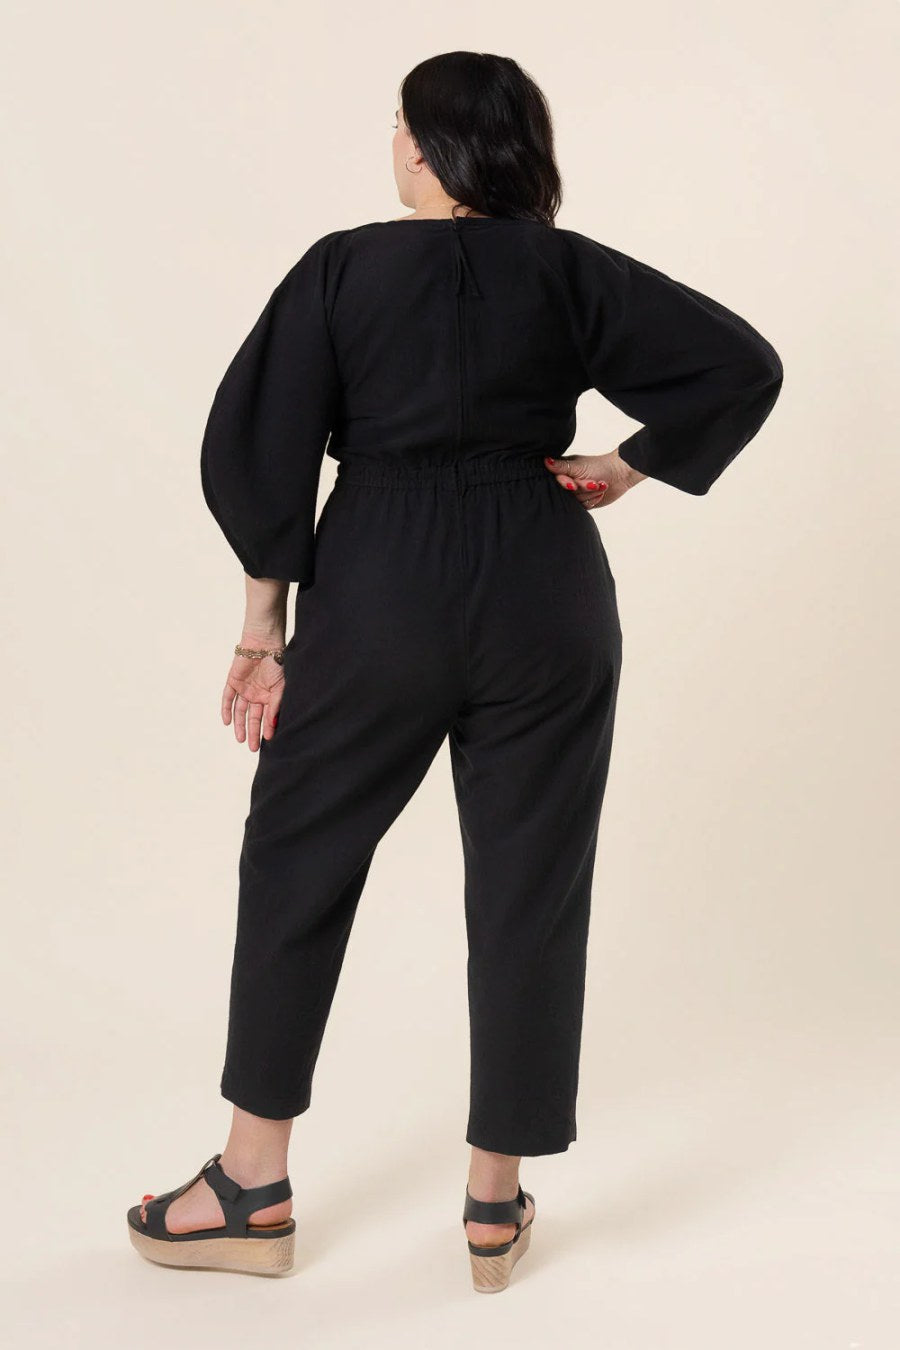 Jo Dress and Jumpsuit Sewing Pattern - Closet Core Patterns